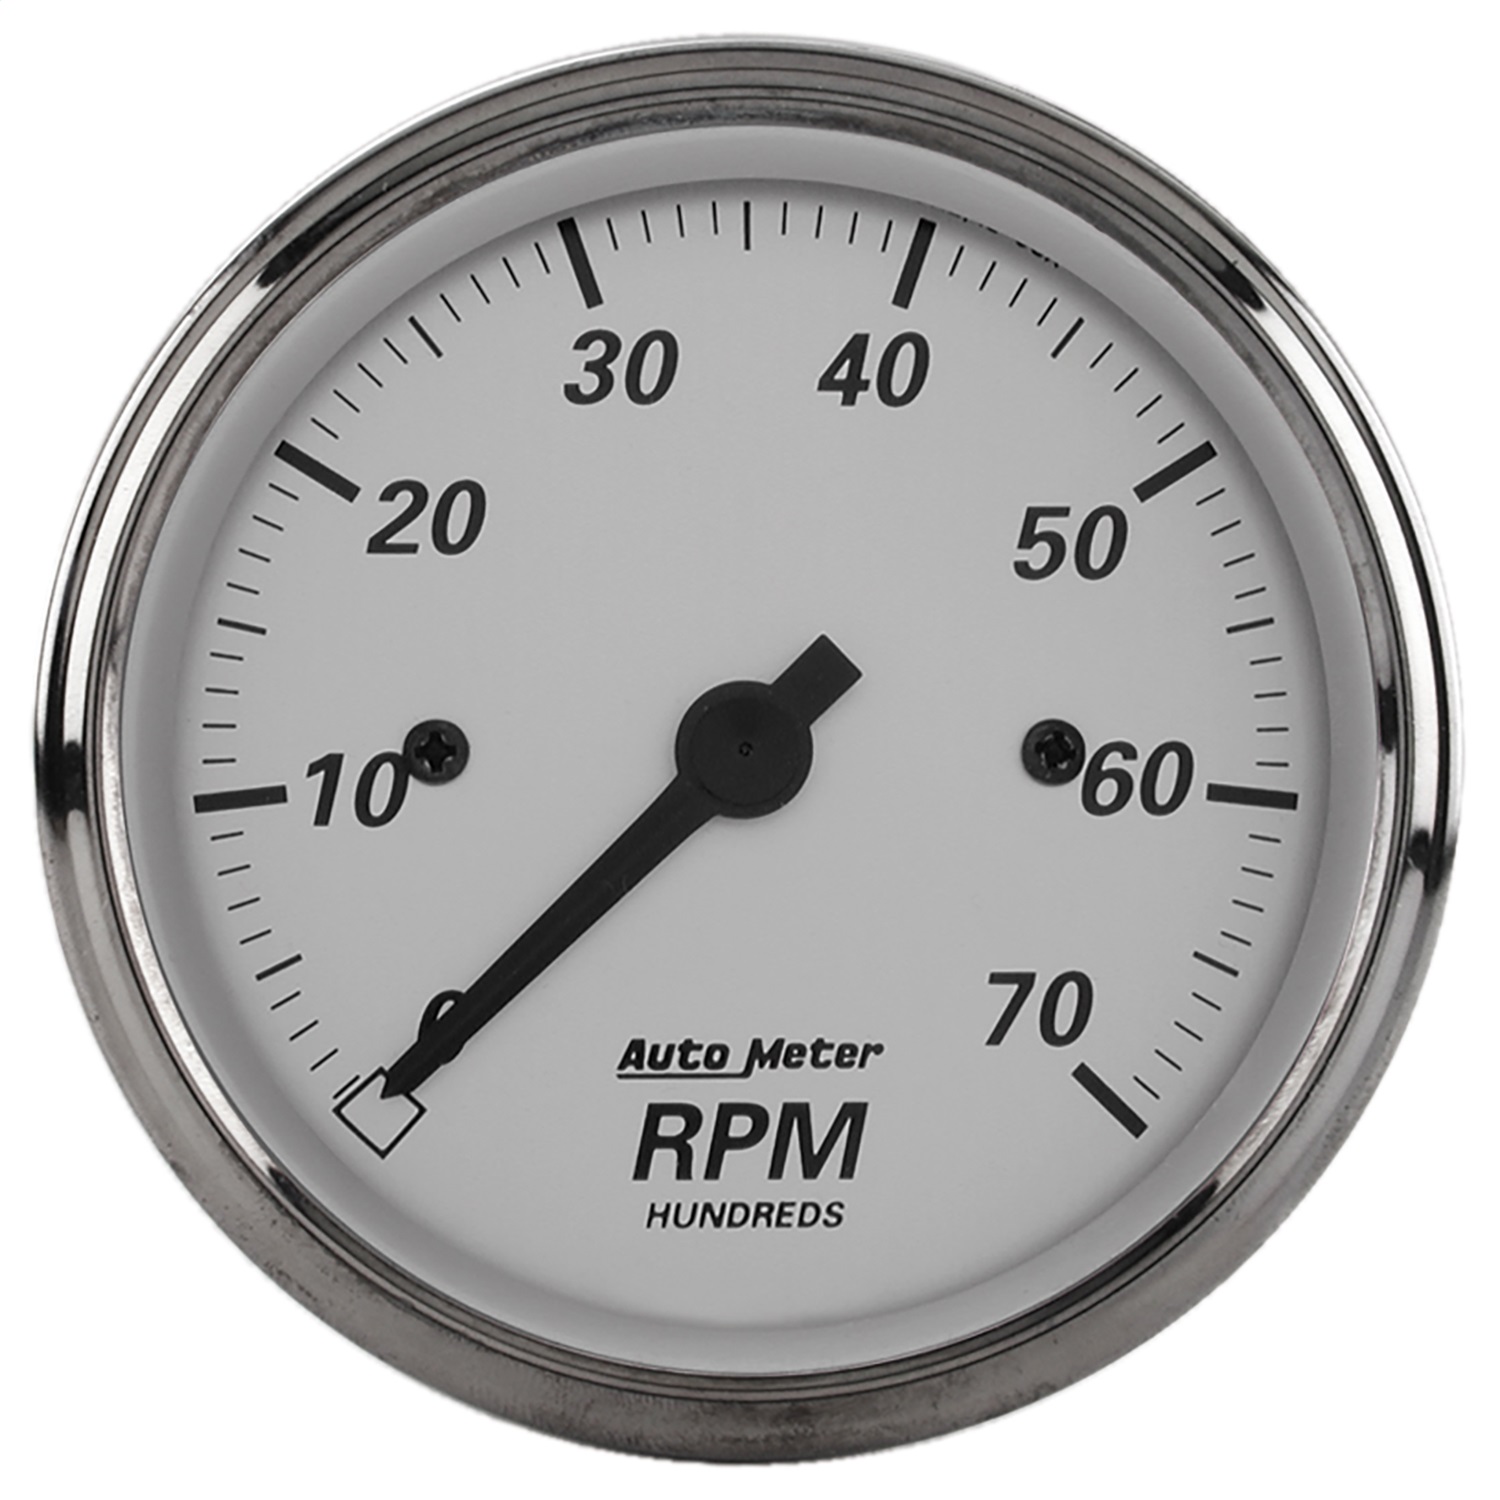 Auto Meter Auto Meter 1995 American Platinum; Electric Tachometer